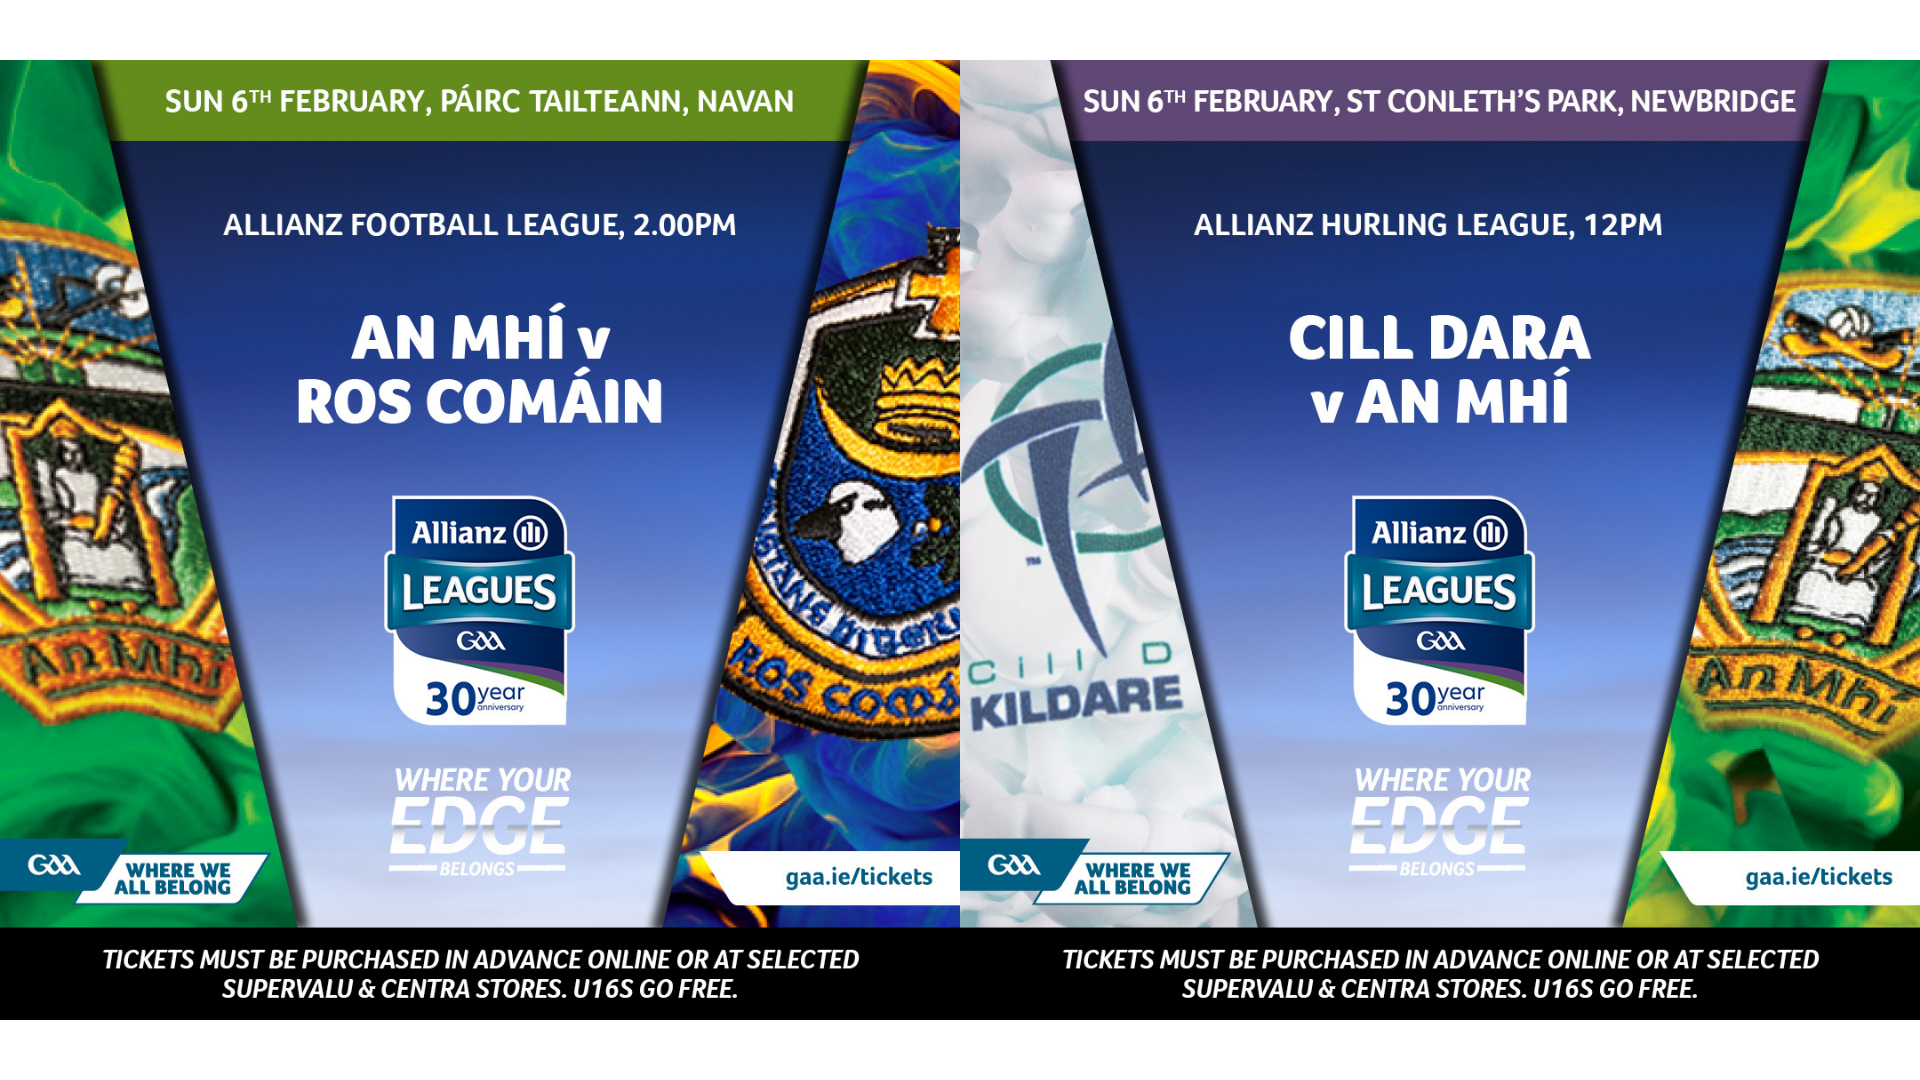 2022 Kildare GAA Allianz League Fixtures - Kildare GAA